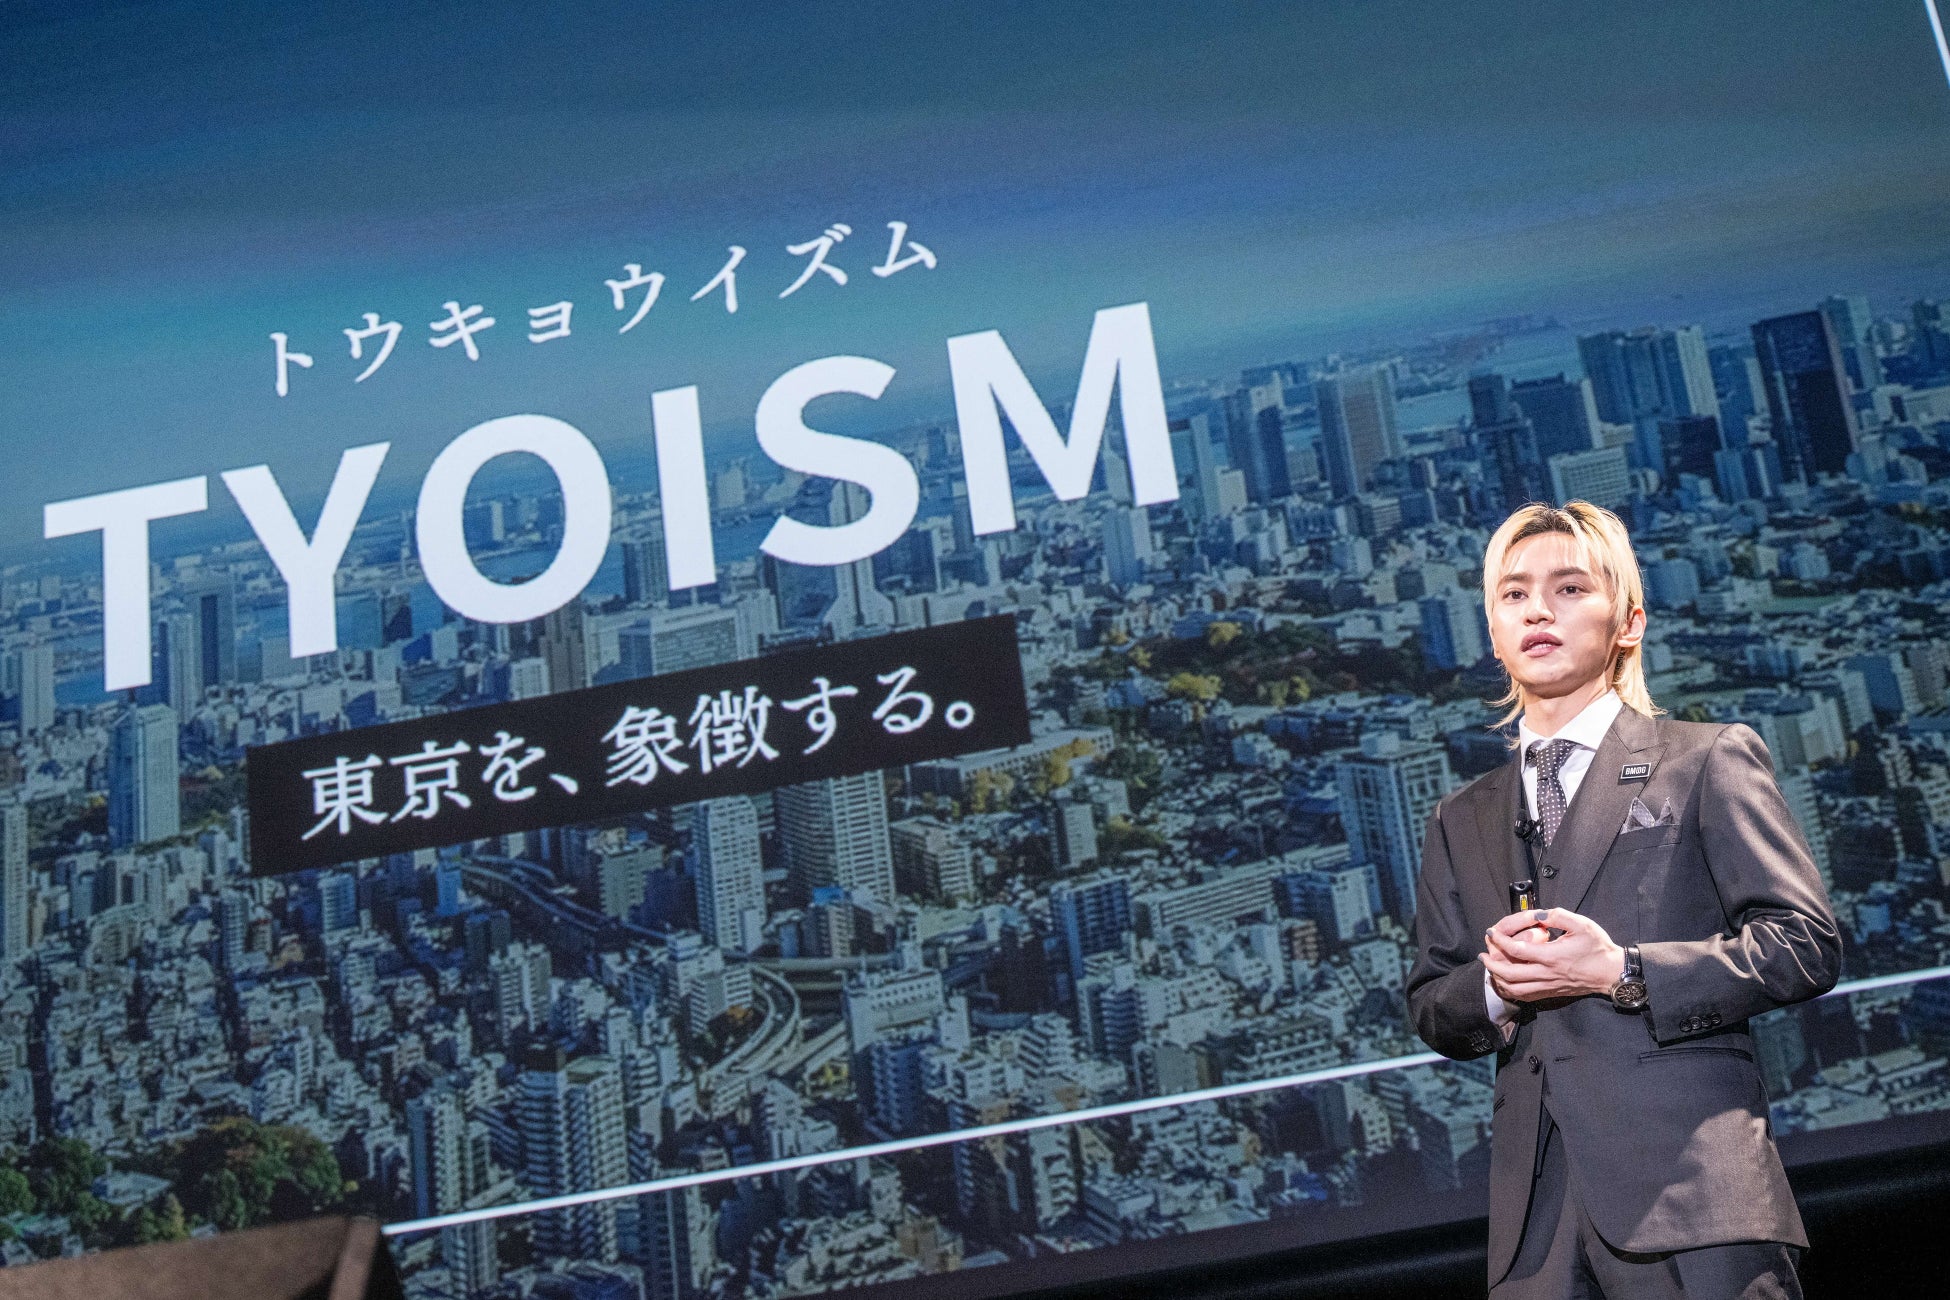 東京を拠点に、世界の音楽市場へ。新たなビジョン「TYOISM」を発表し、新レーベル立ち上げ、サウナ付き自社ビル構想、経営体制などを初公開。